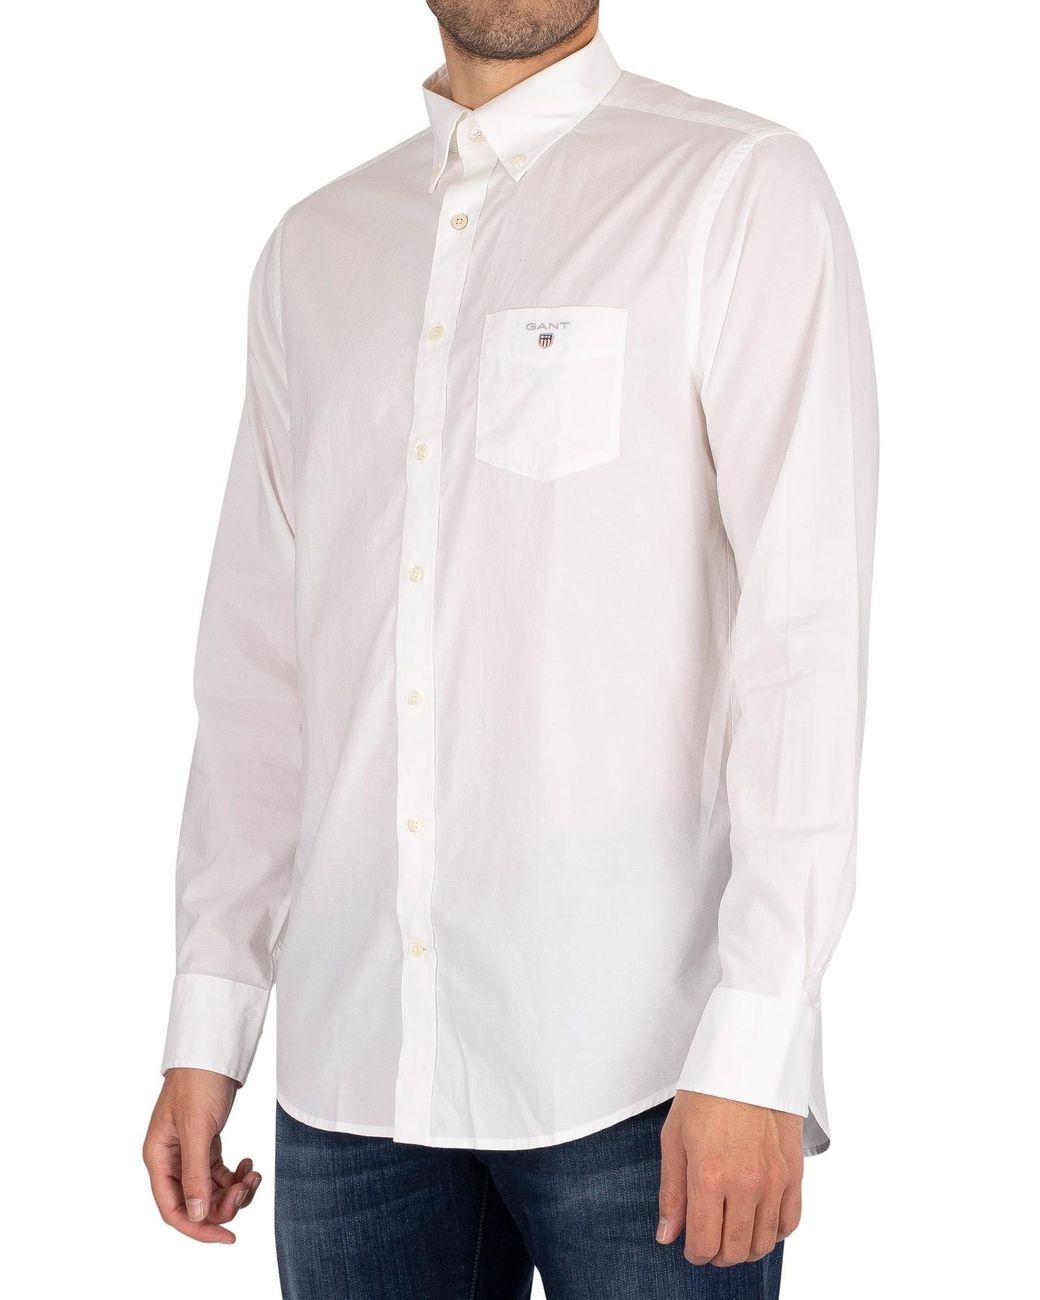 GANT The Broadcloth Regular Shirt in White for Men - Lyst